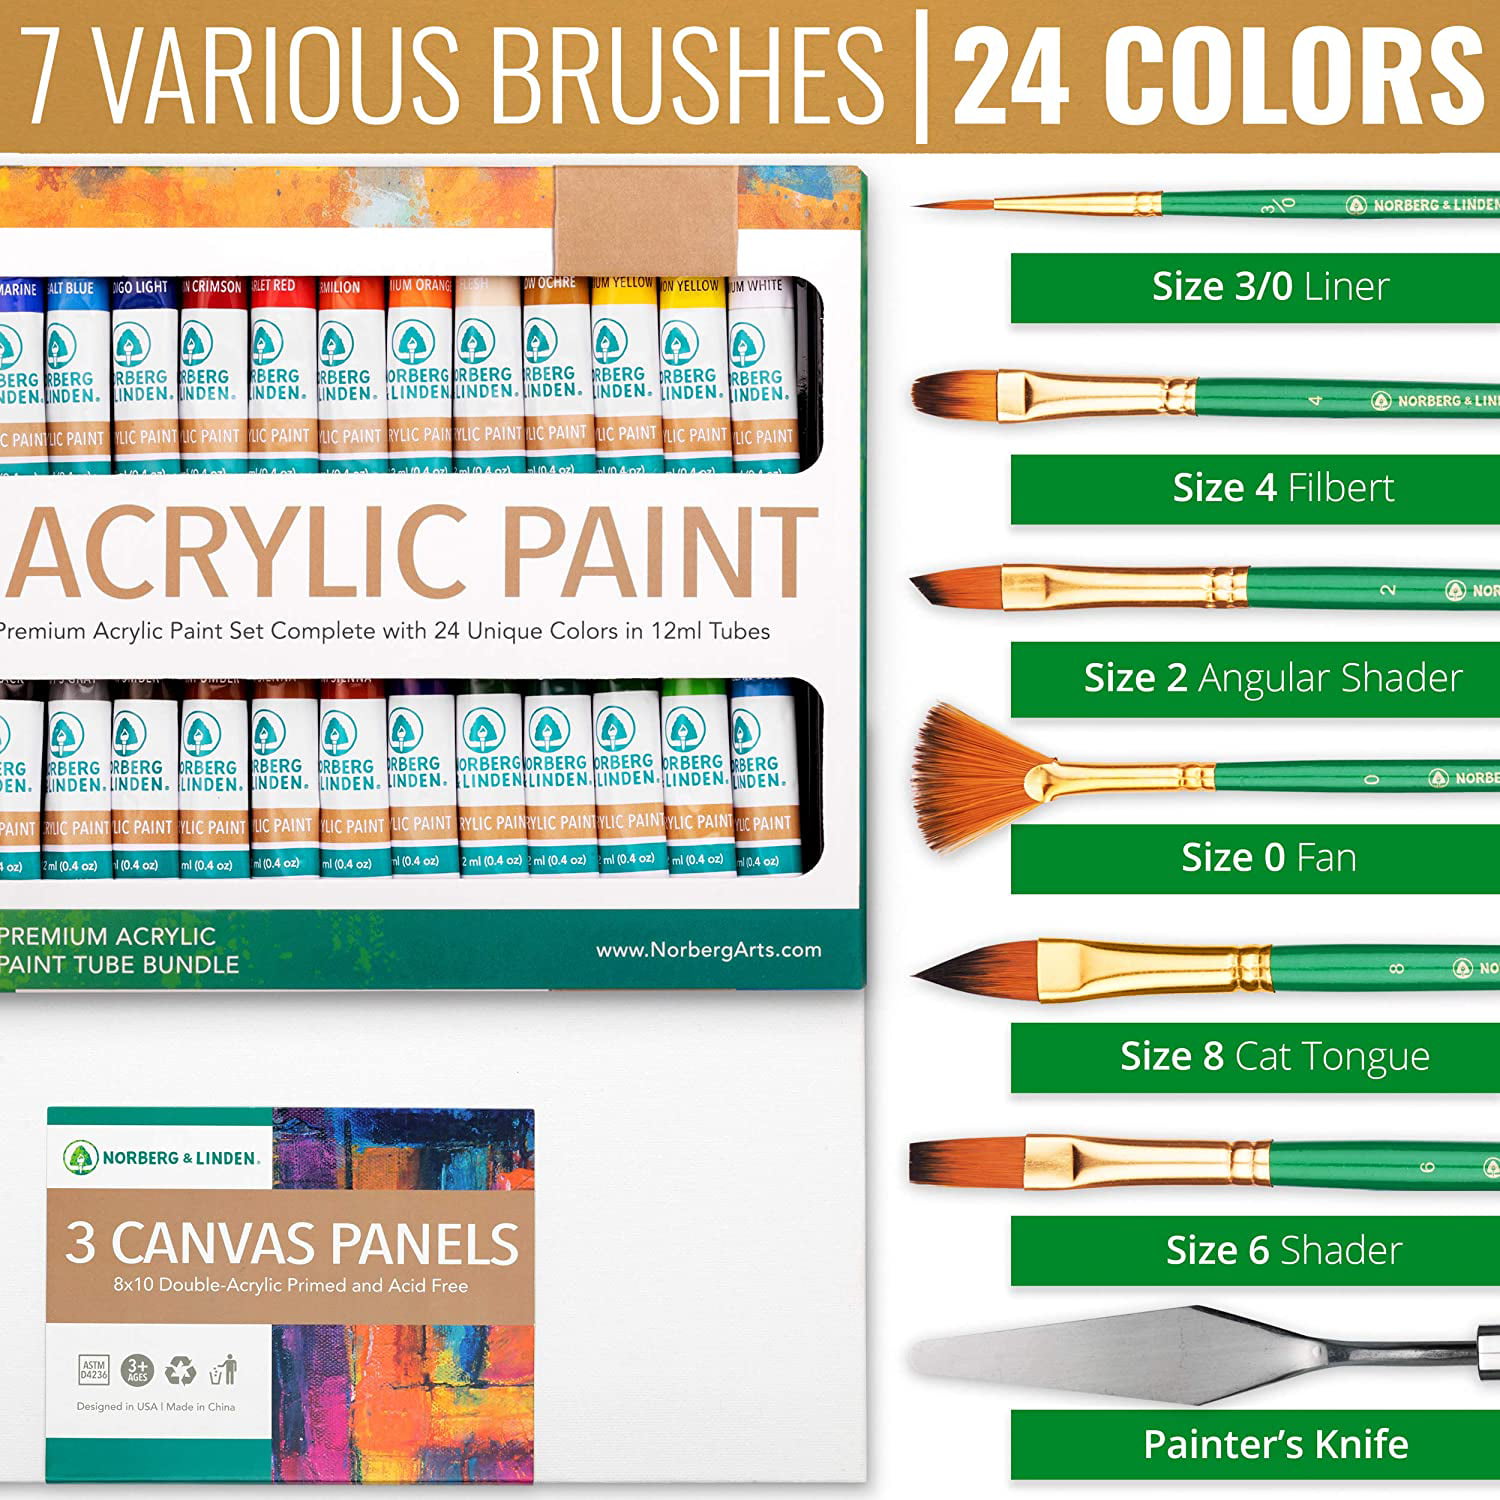 Norberg & Linden Premium Acrylic Paint Set - Acrylic Paint Sets for Adults,  Teens, Kids - Premium Painting Supplies - Includes 60 Vivid Colors (4 oz)